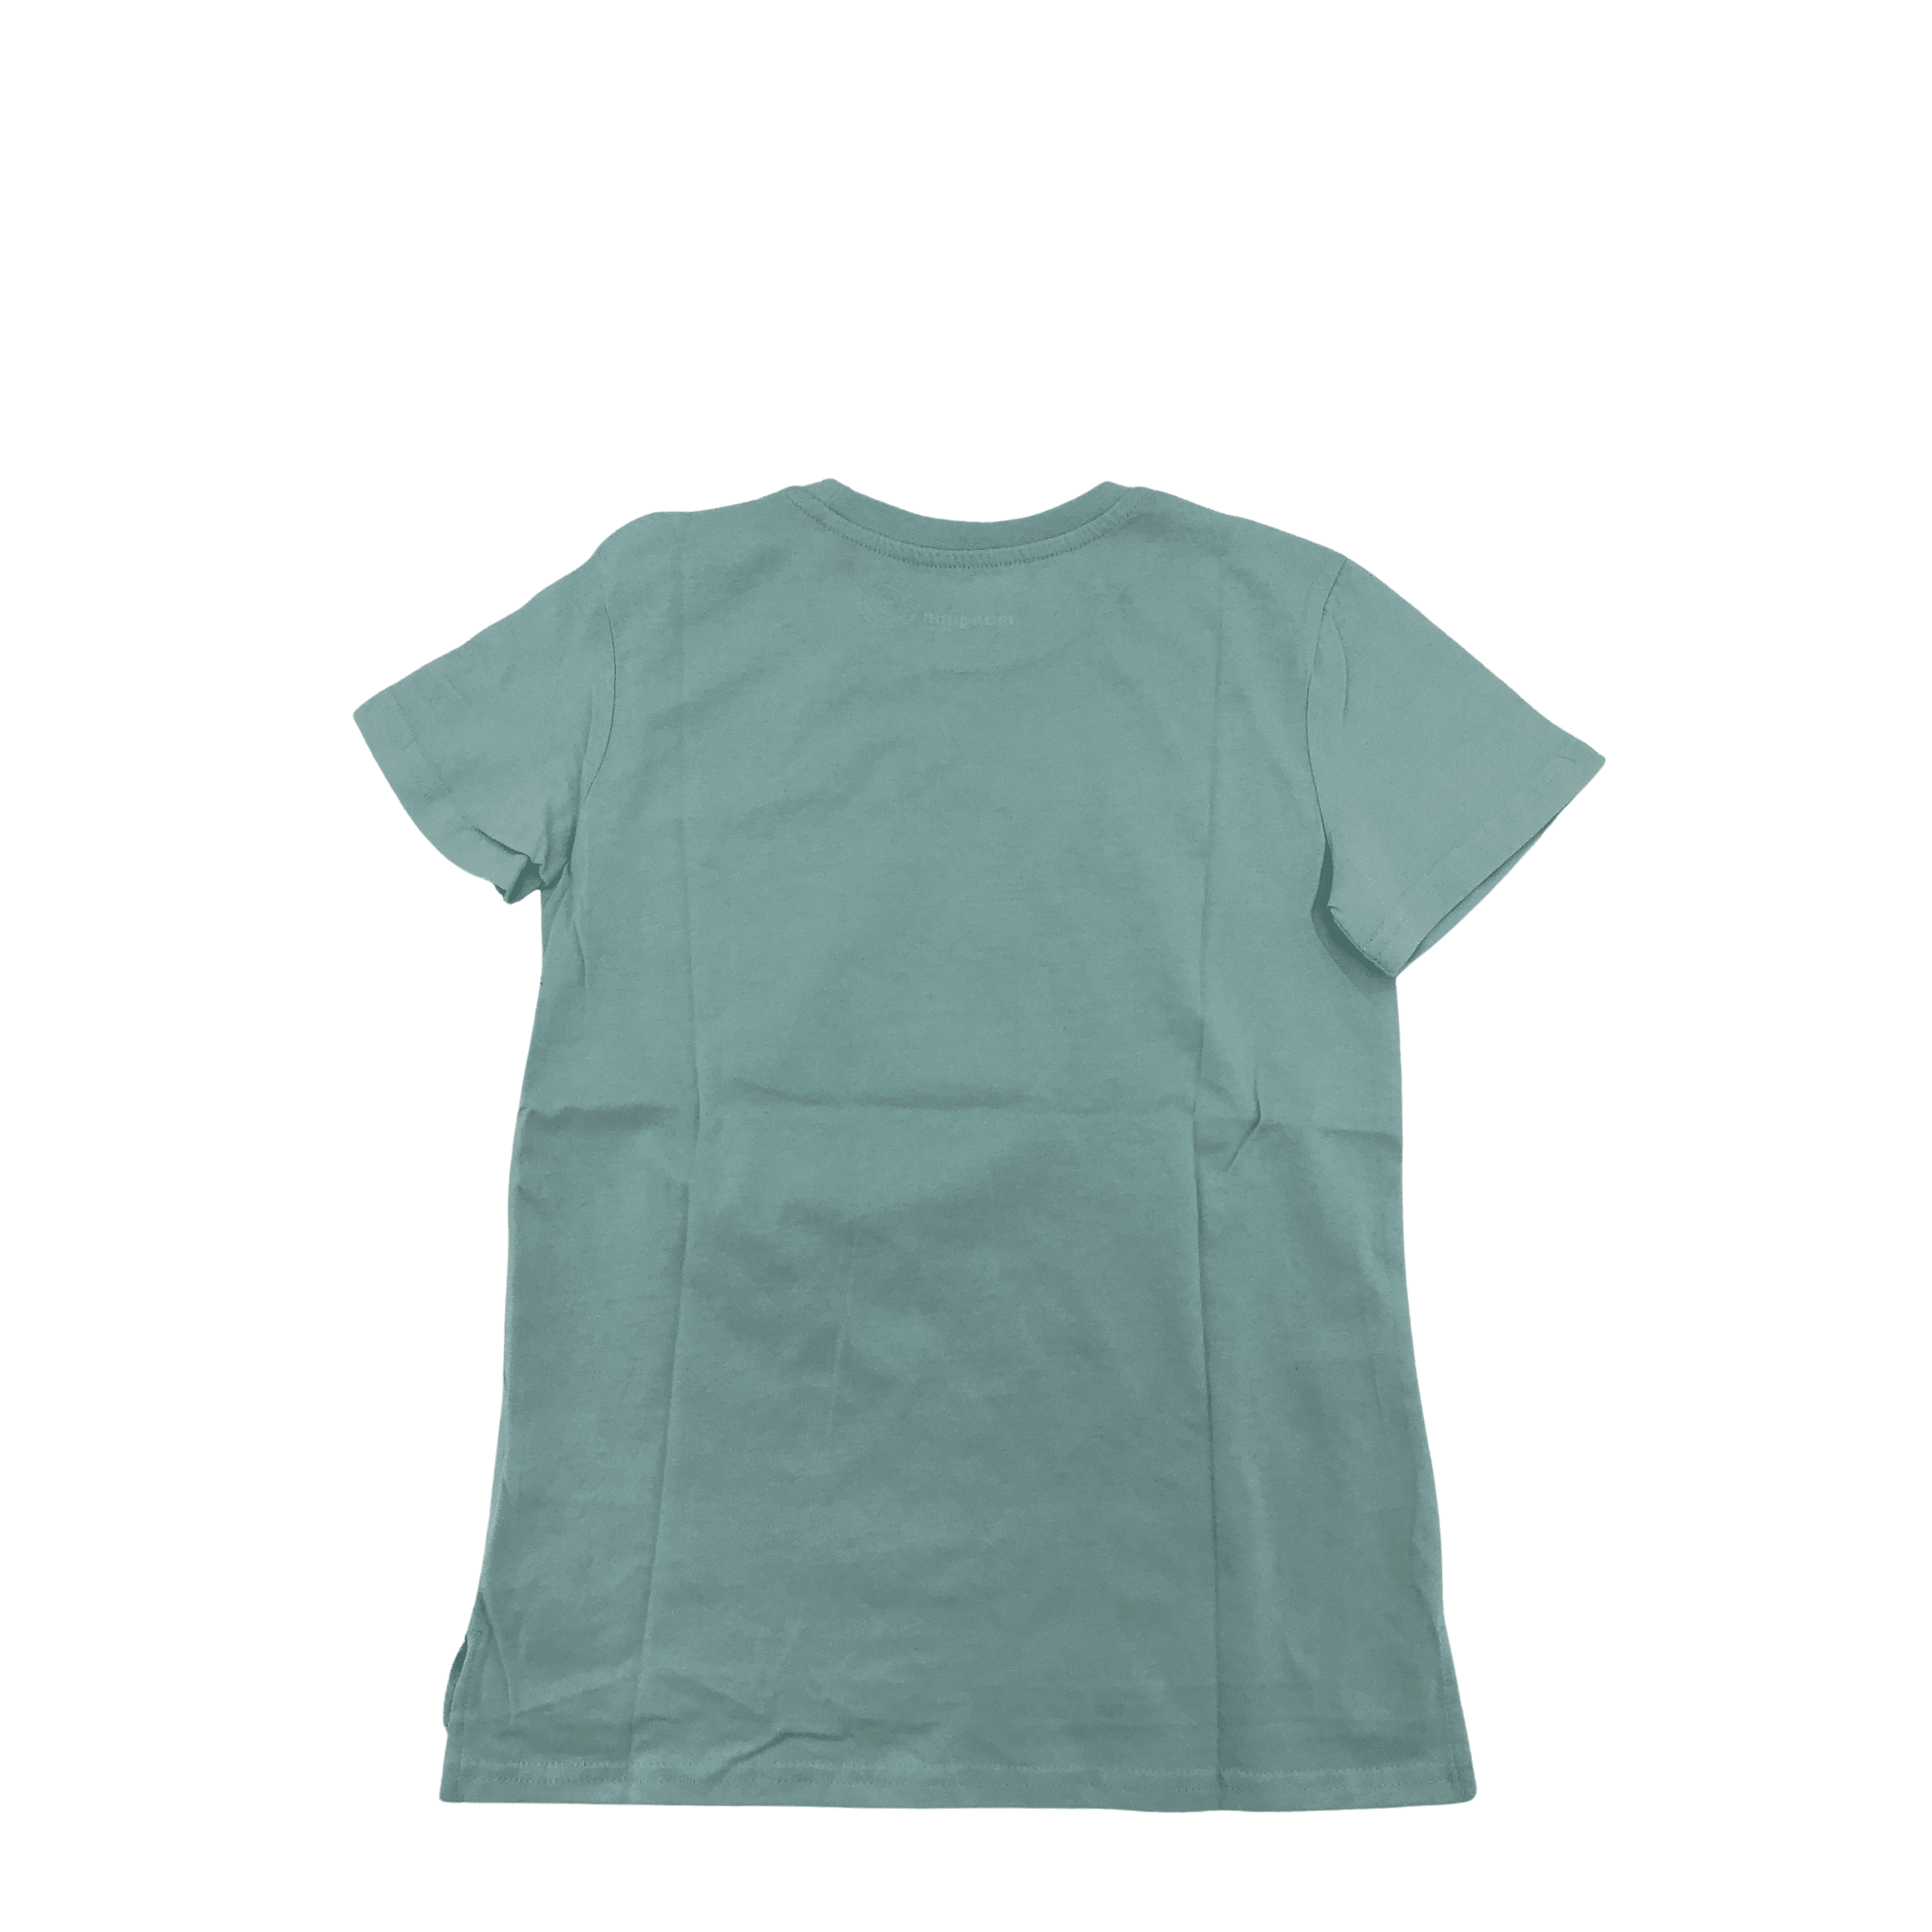 Manguun Boy's T-Shirt: Light Blue / Various Sizes